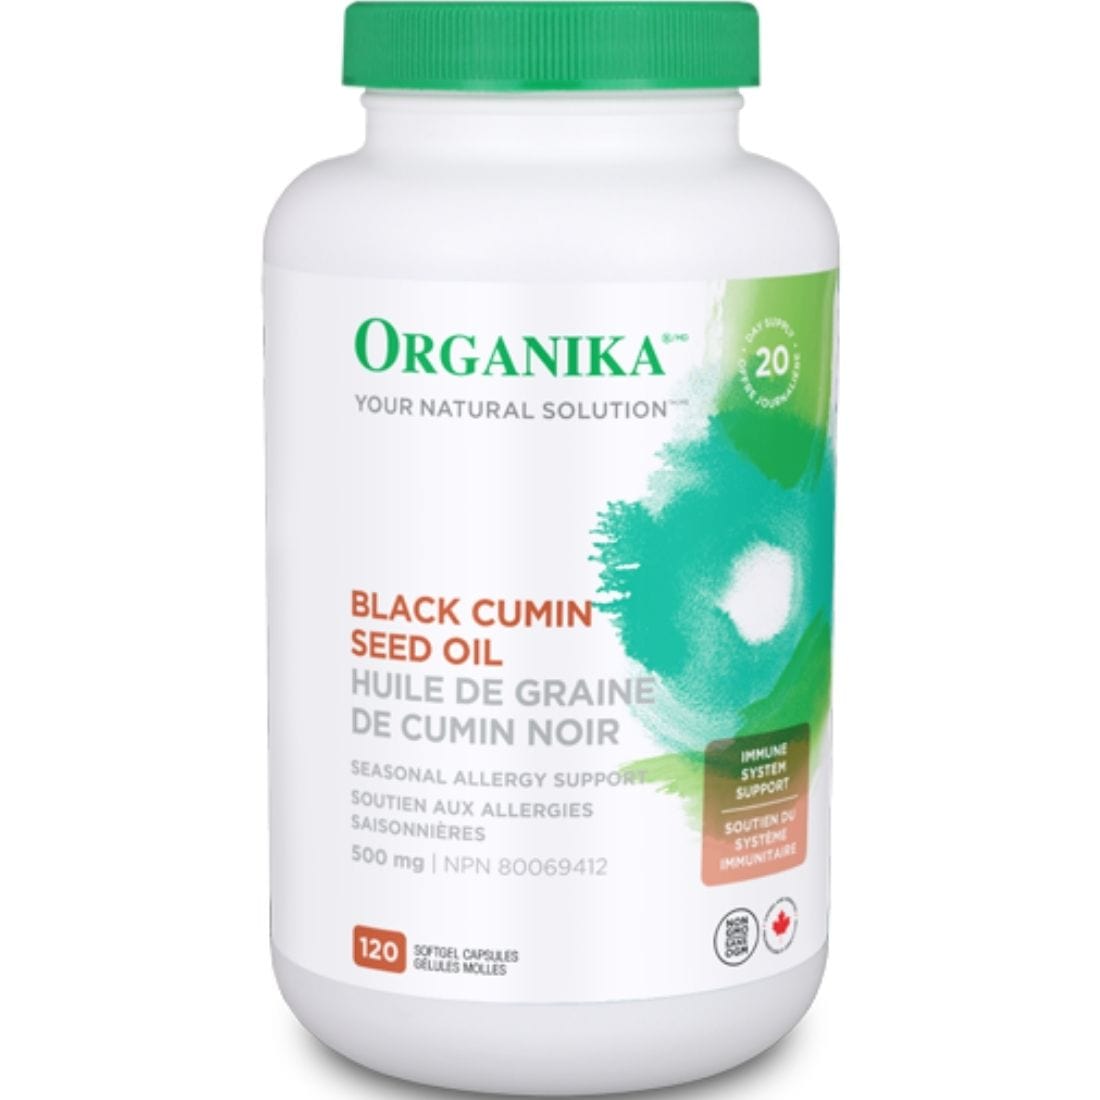 Organika Black Cumin Seed Oil, 500mg